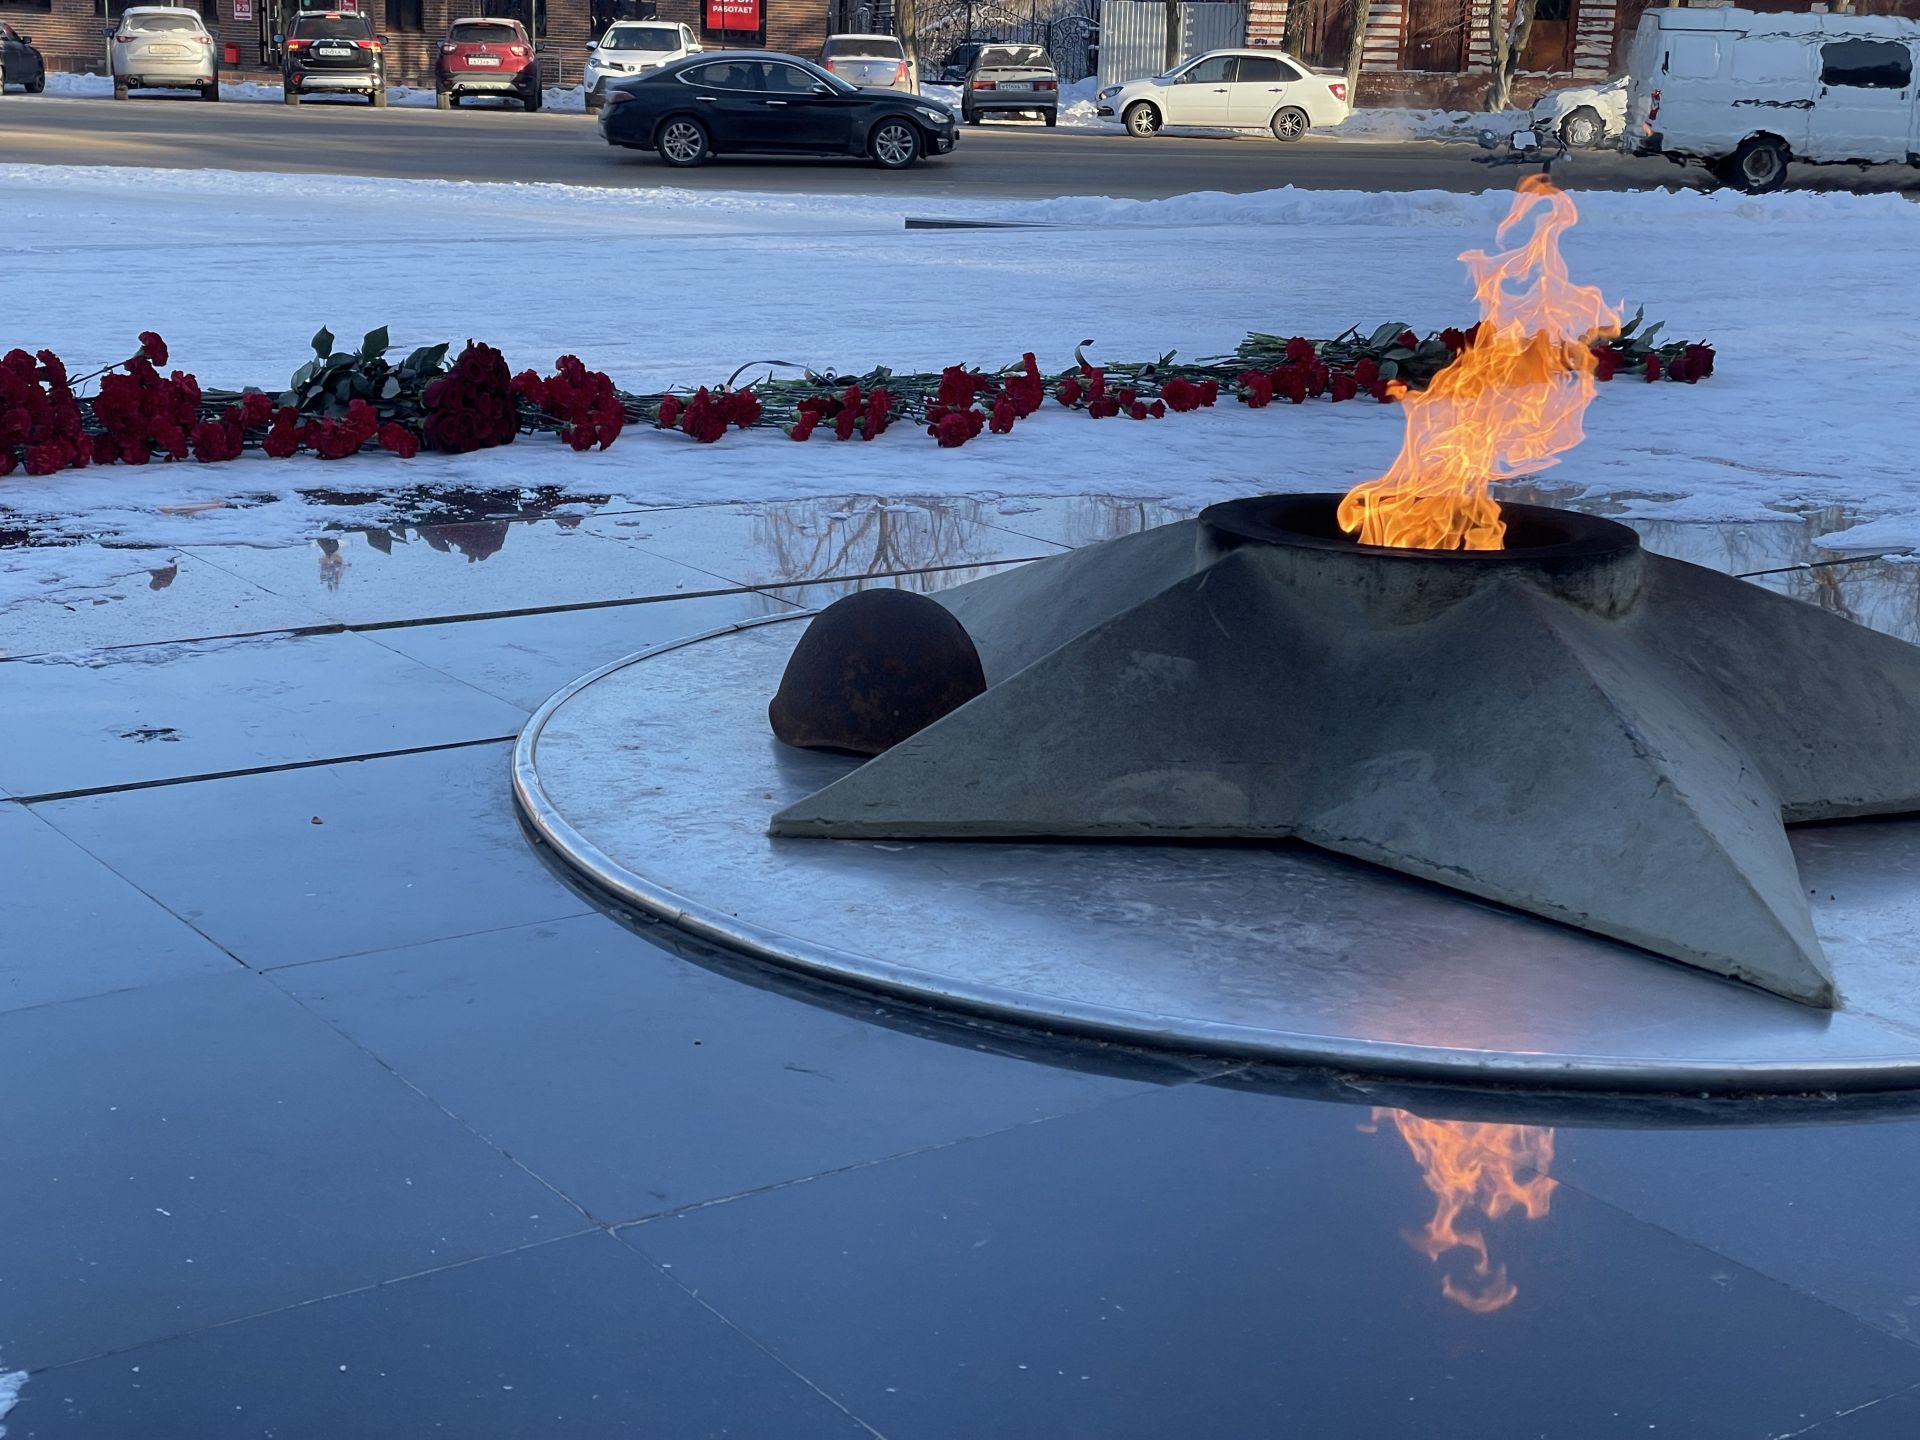 Линар Закиров в День Героев Отечества возложил цветы к монументам города